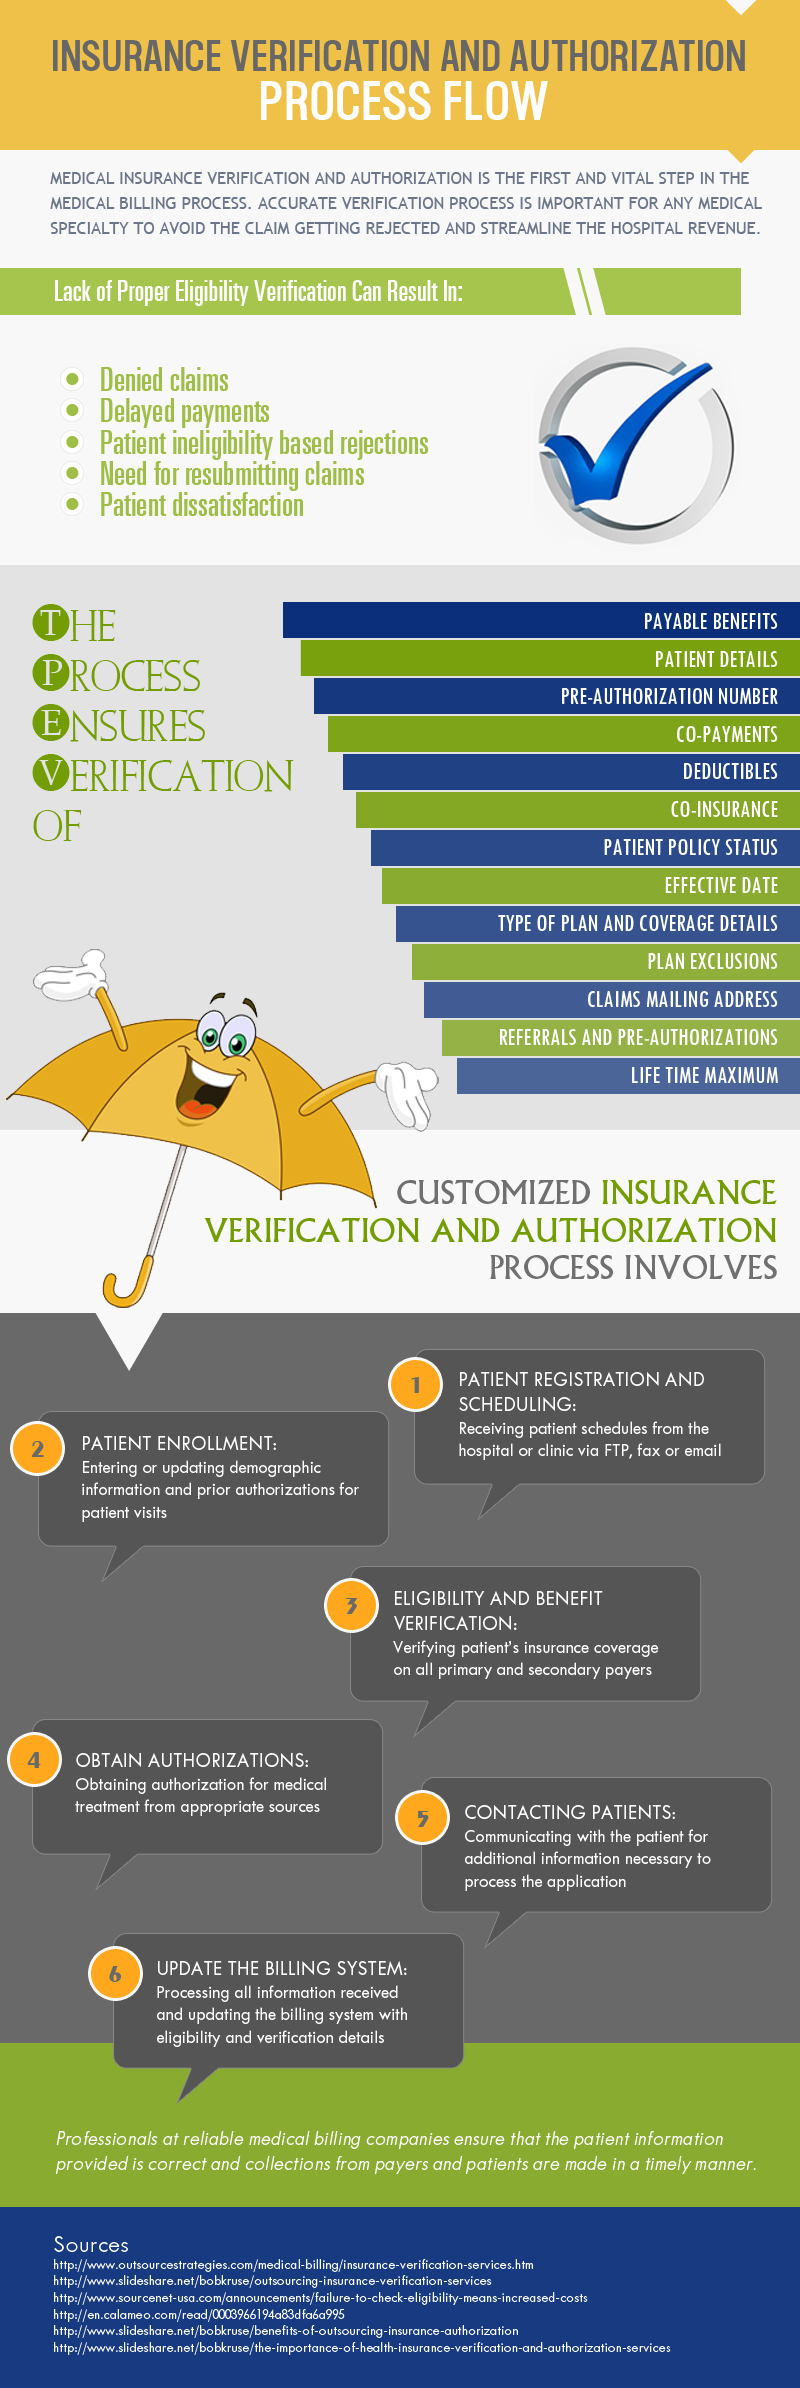 insuranceverification-authorization-processflow